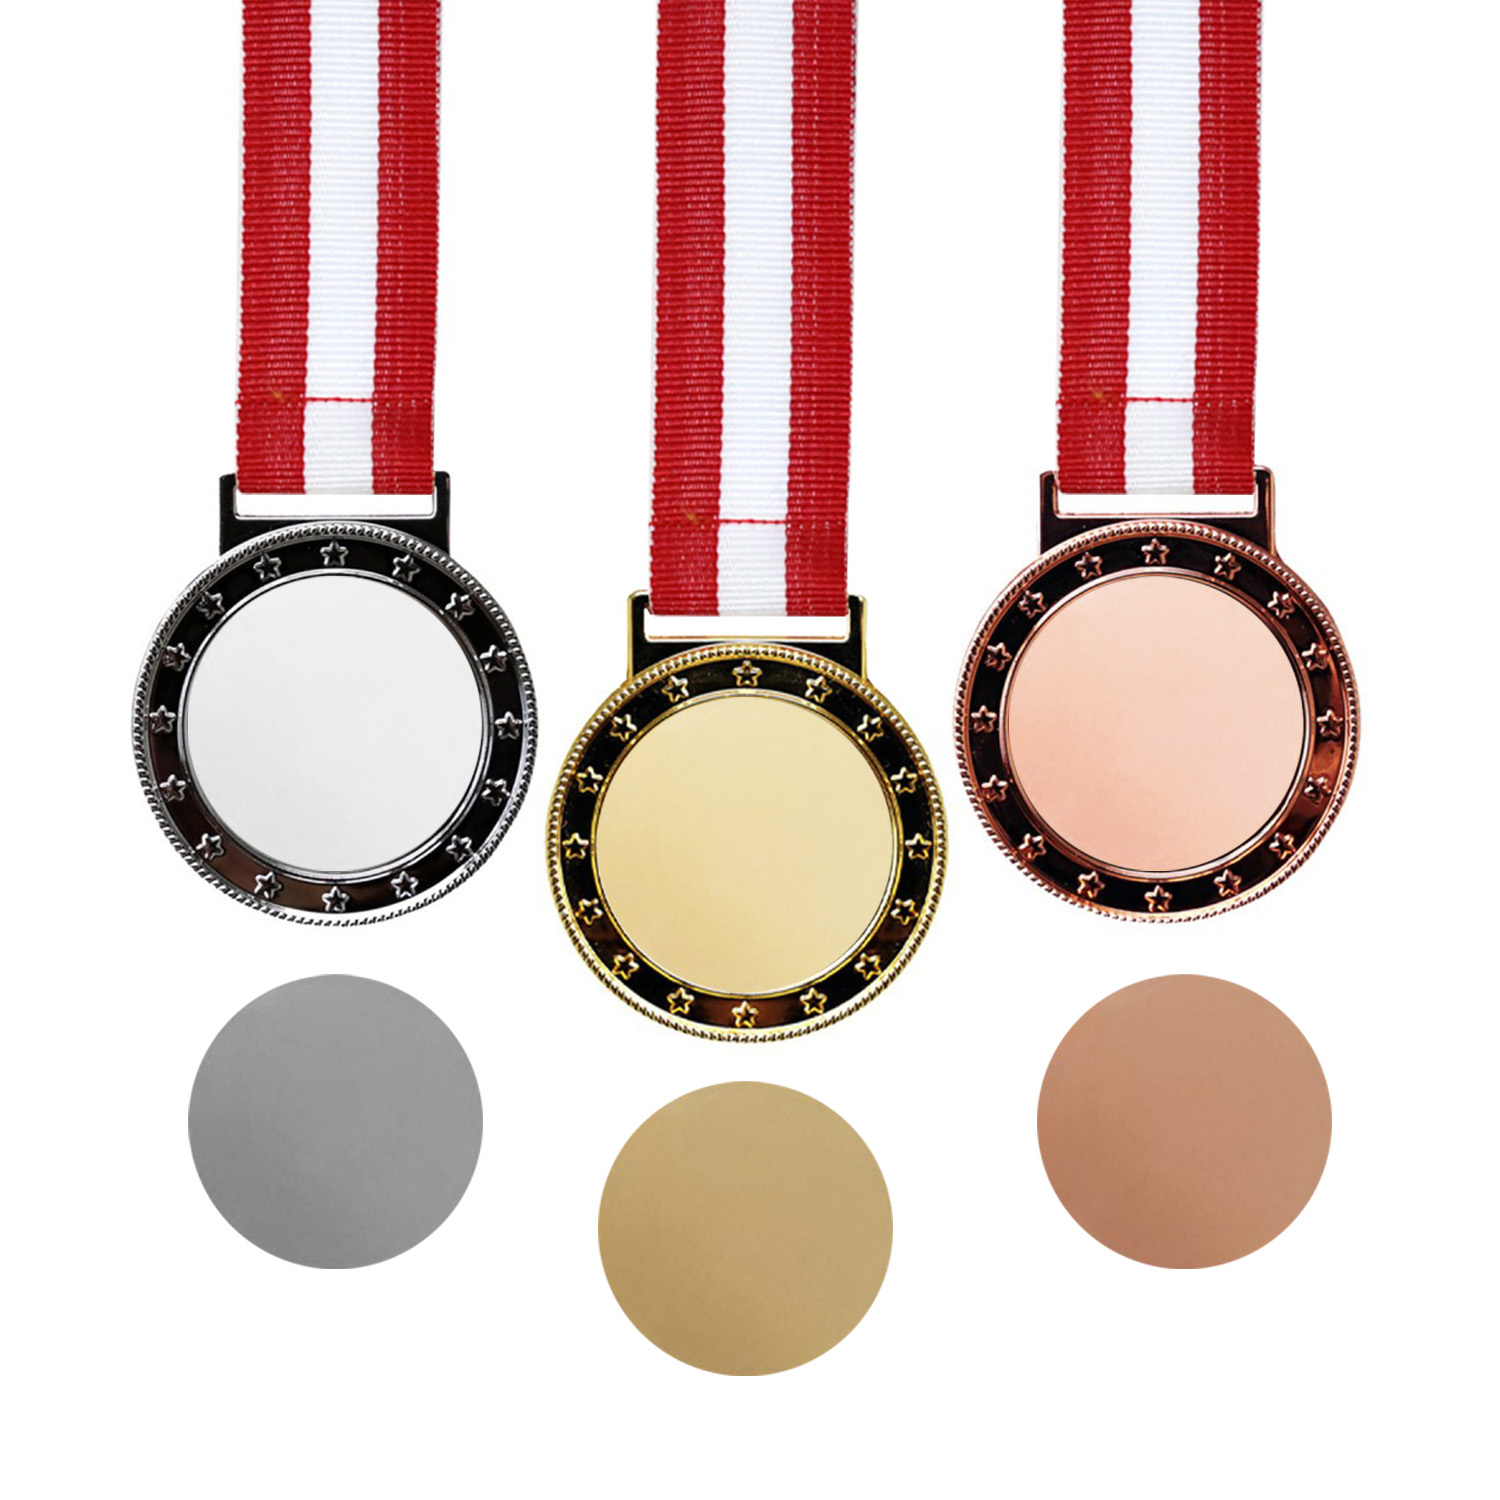 Helix Medal Set